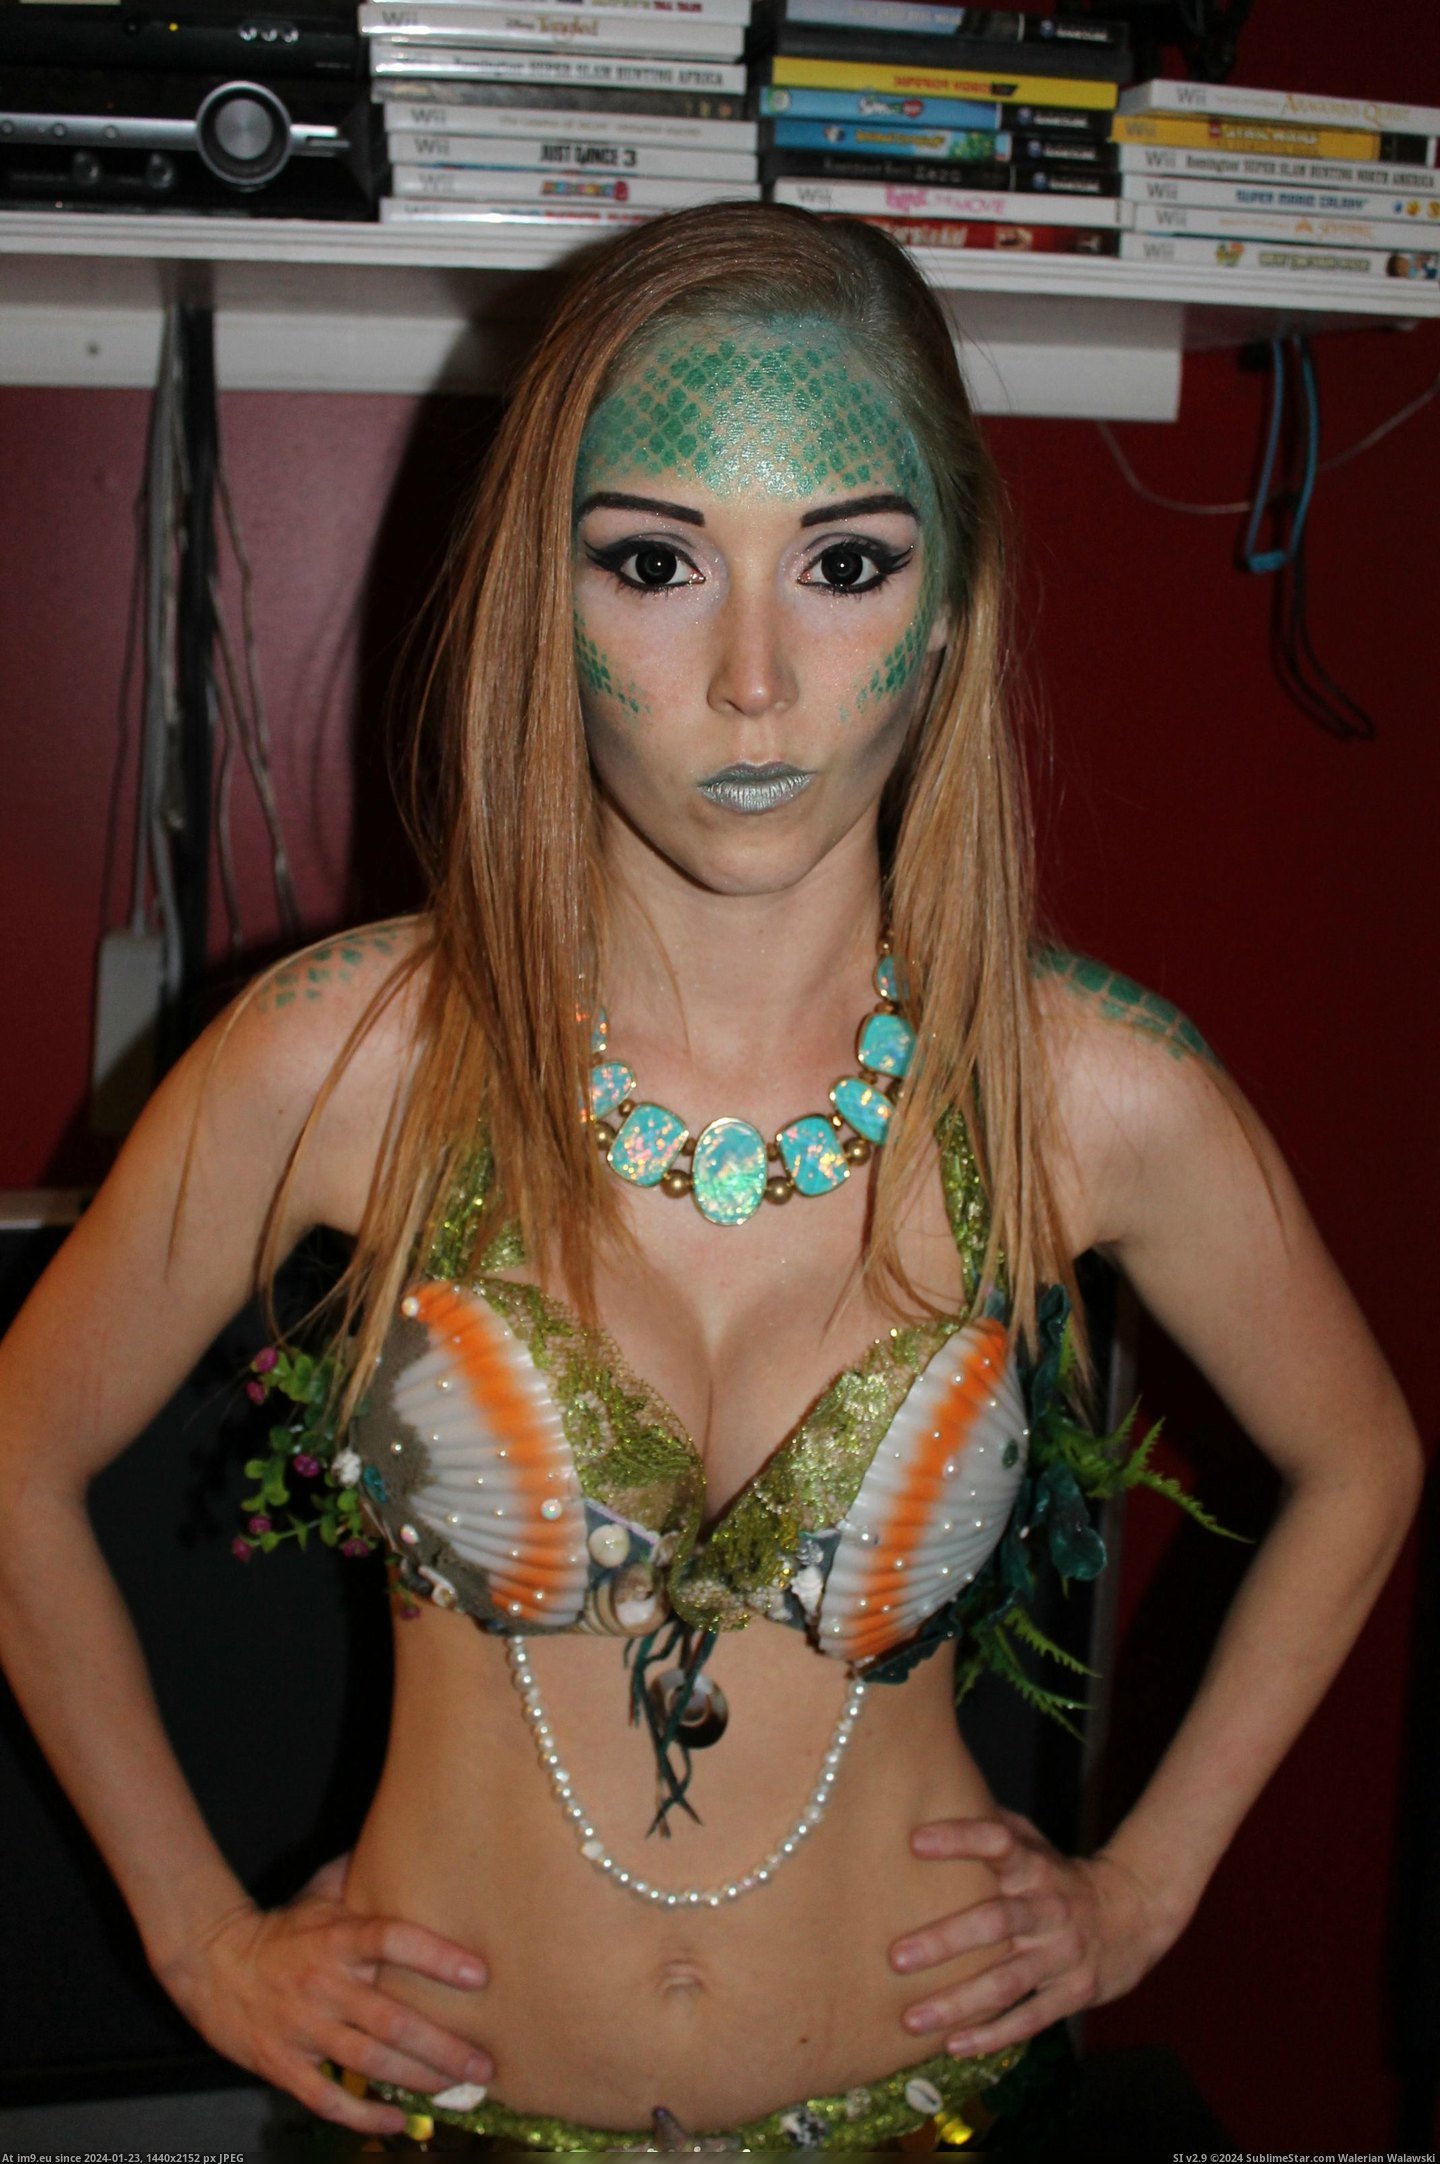 #Costume #Homemade #Mermaid [Pics] My homemade mermaid costume! 6 Pic. (Bild von album My r/PICS favs))